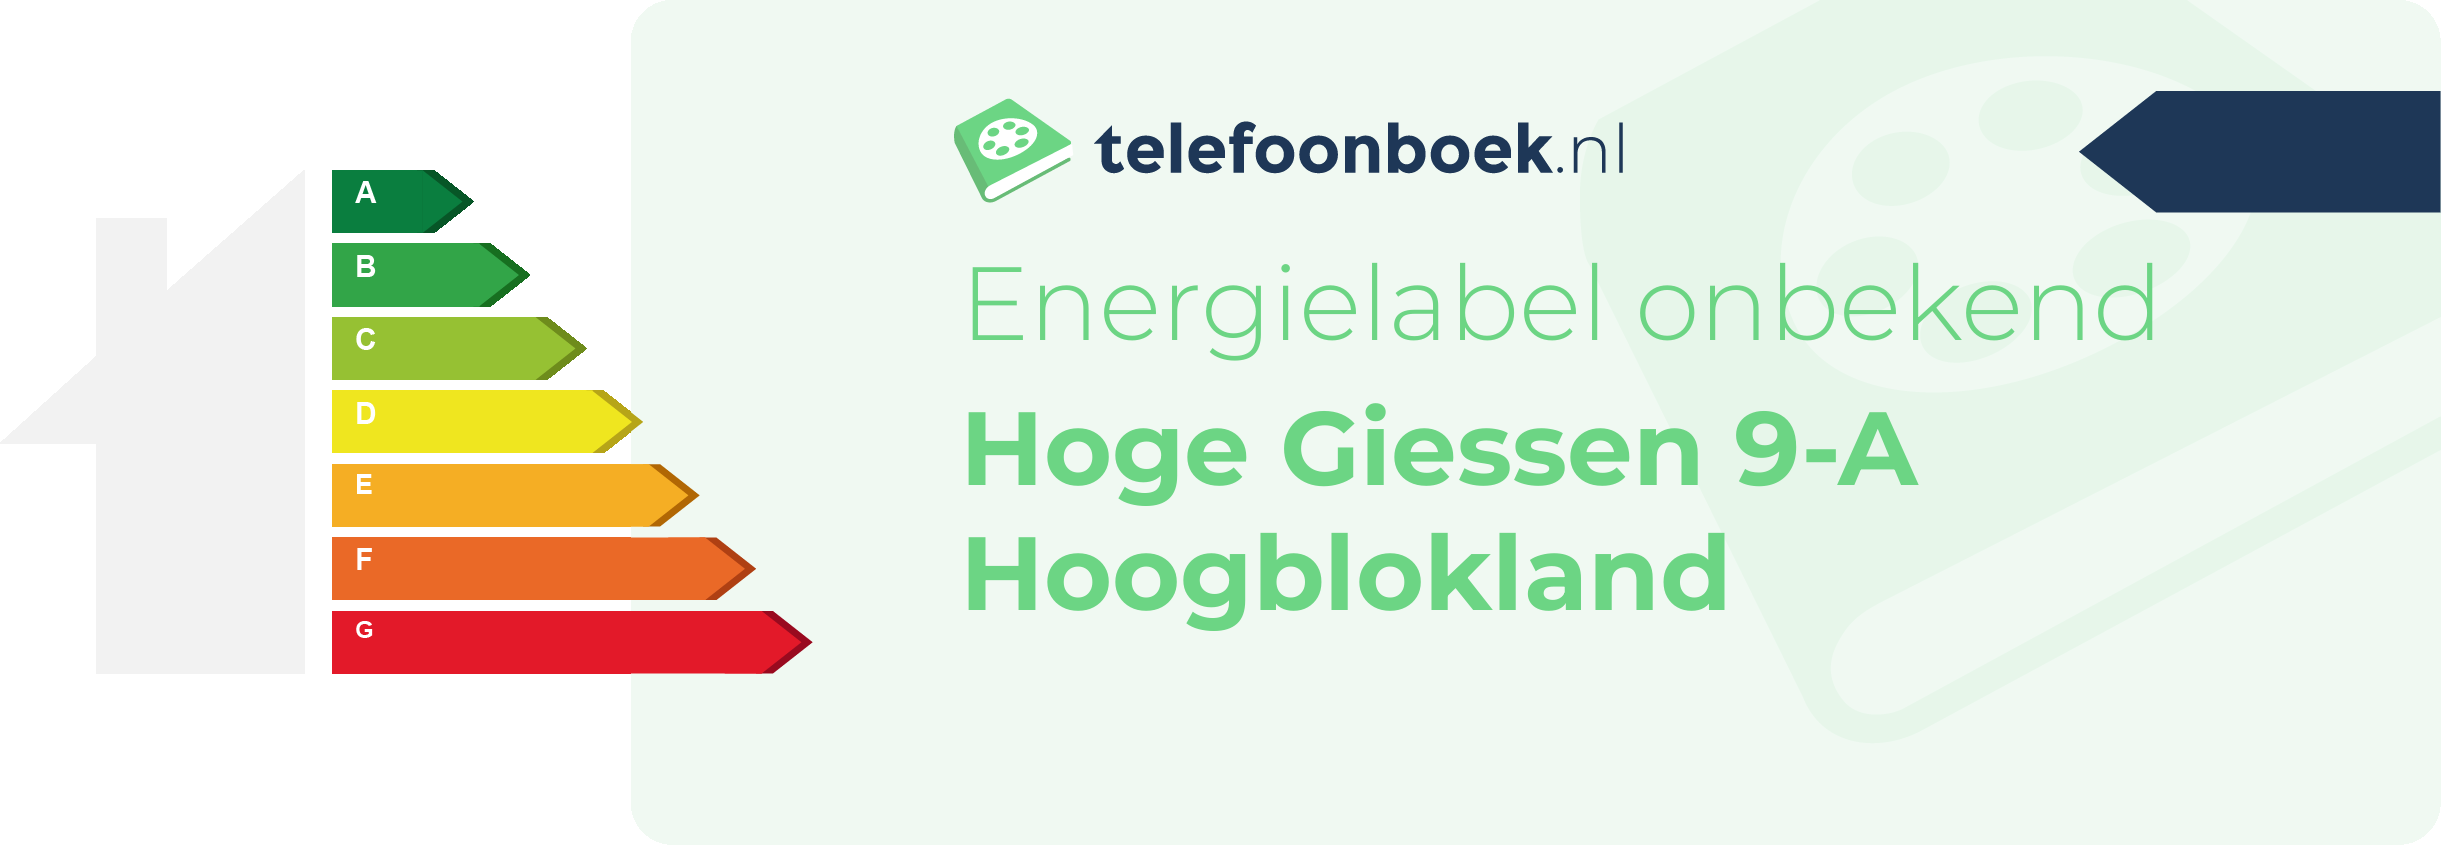 Energielabel Hoge Giessen 9-A Hoogblokland